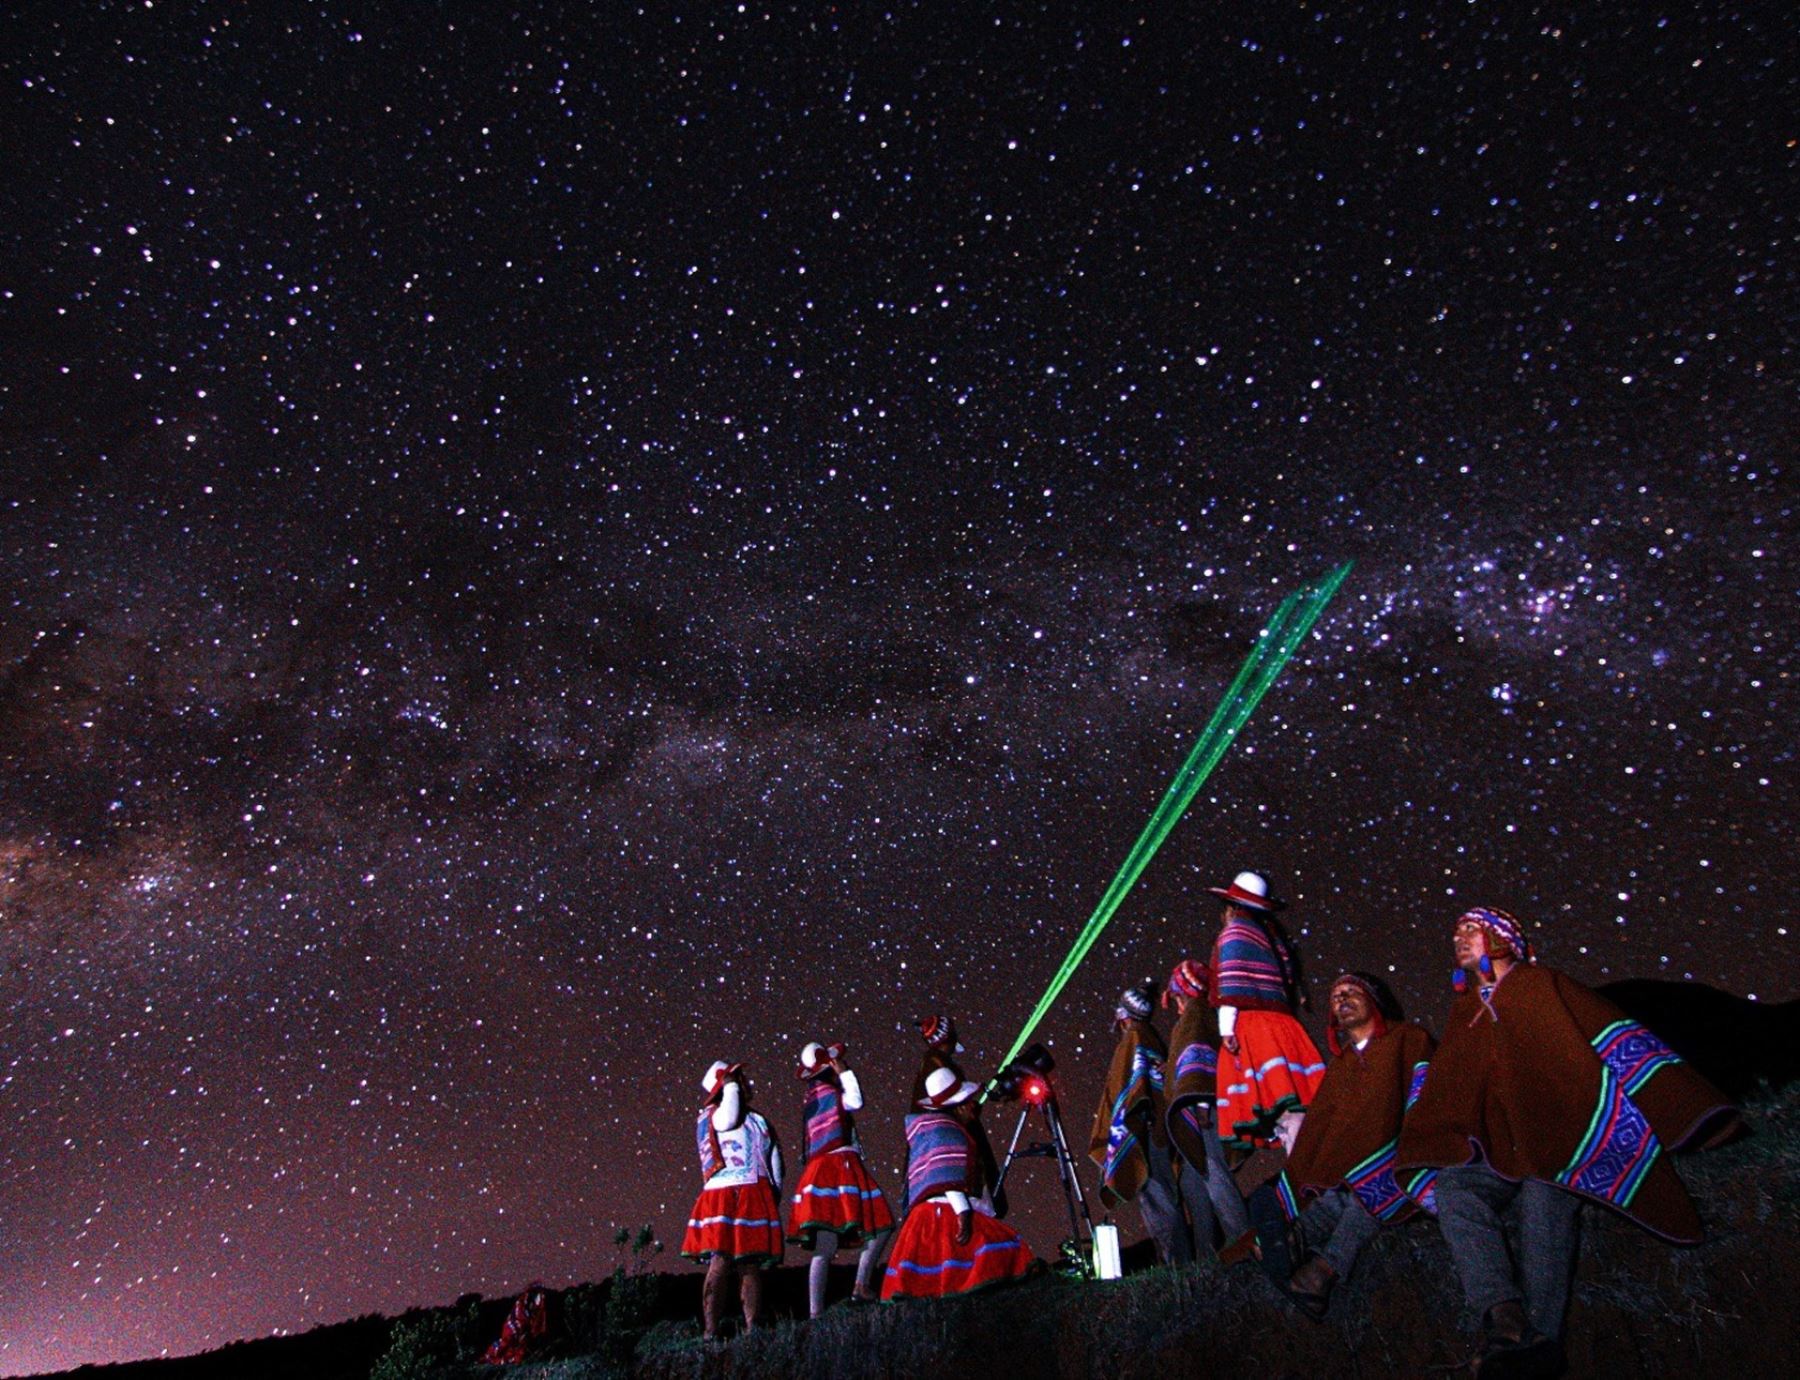 El astroturismo, es el novedoso segmento de turismo que busca posicionar a las comunidades campesinas de la región Cusco. Foto cortesía: Domingo Atao / Kallpa Travel